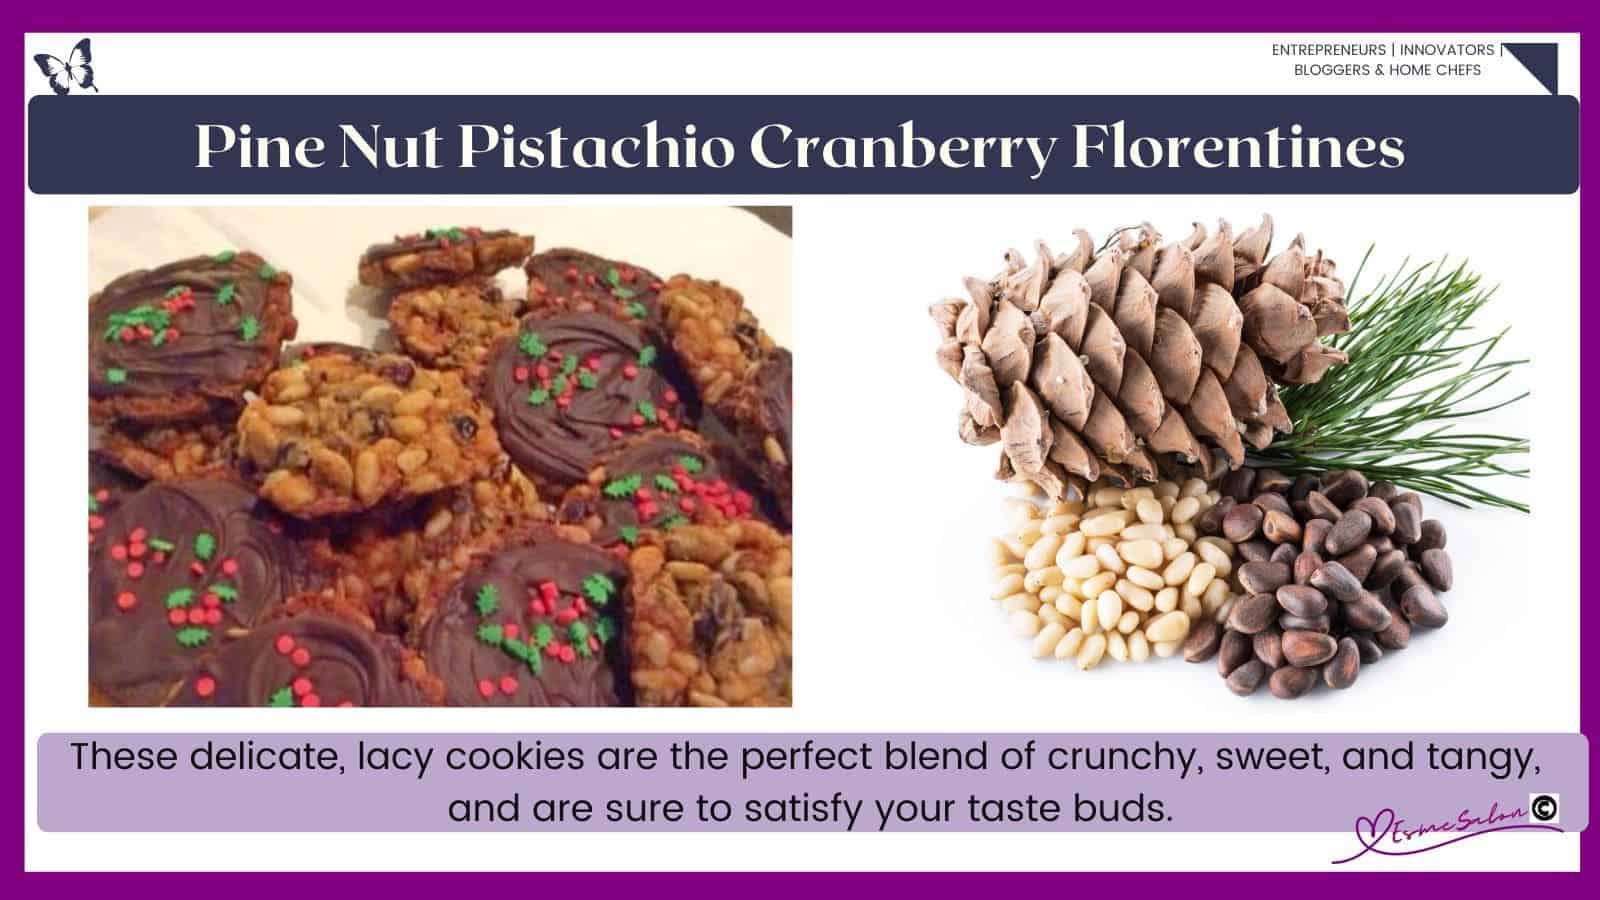 an image of crispy lacy Pine Nut Pistachio Cranberry Florentines